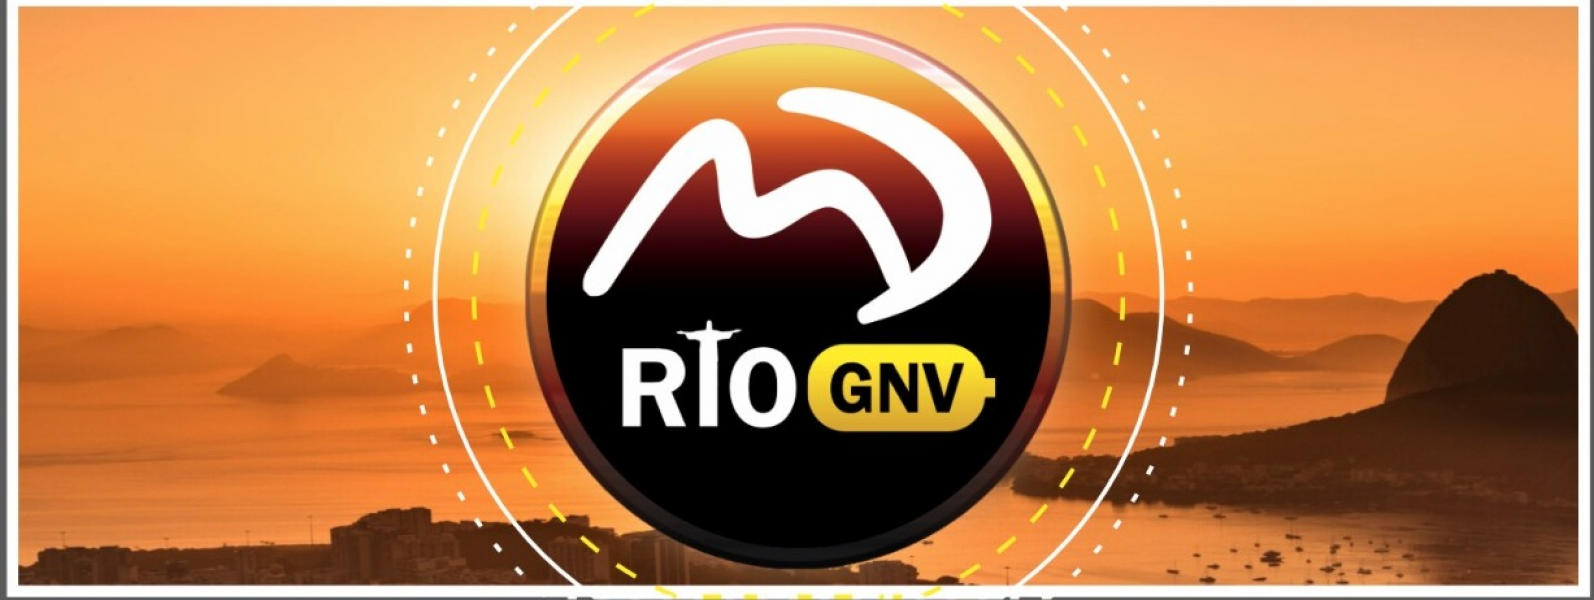 MD Rio Peças GNV em Nova Iguaçu